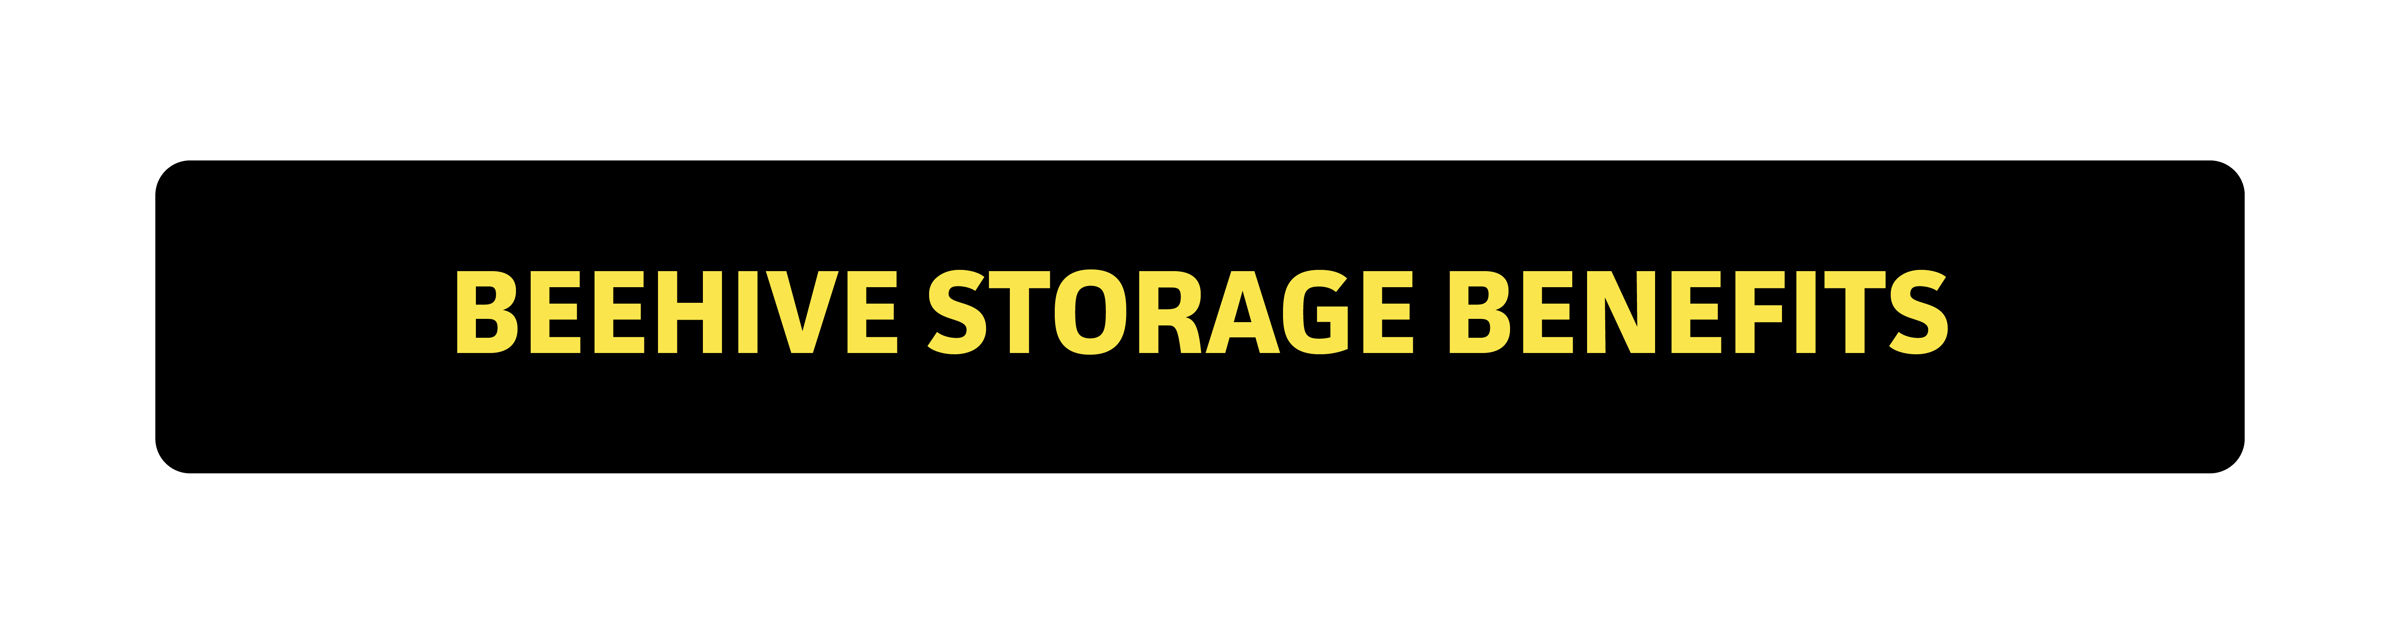 Advantages of choosing Beehive Storage